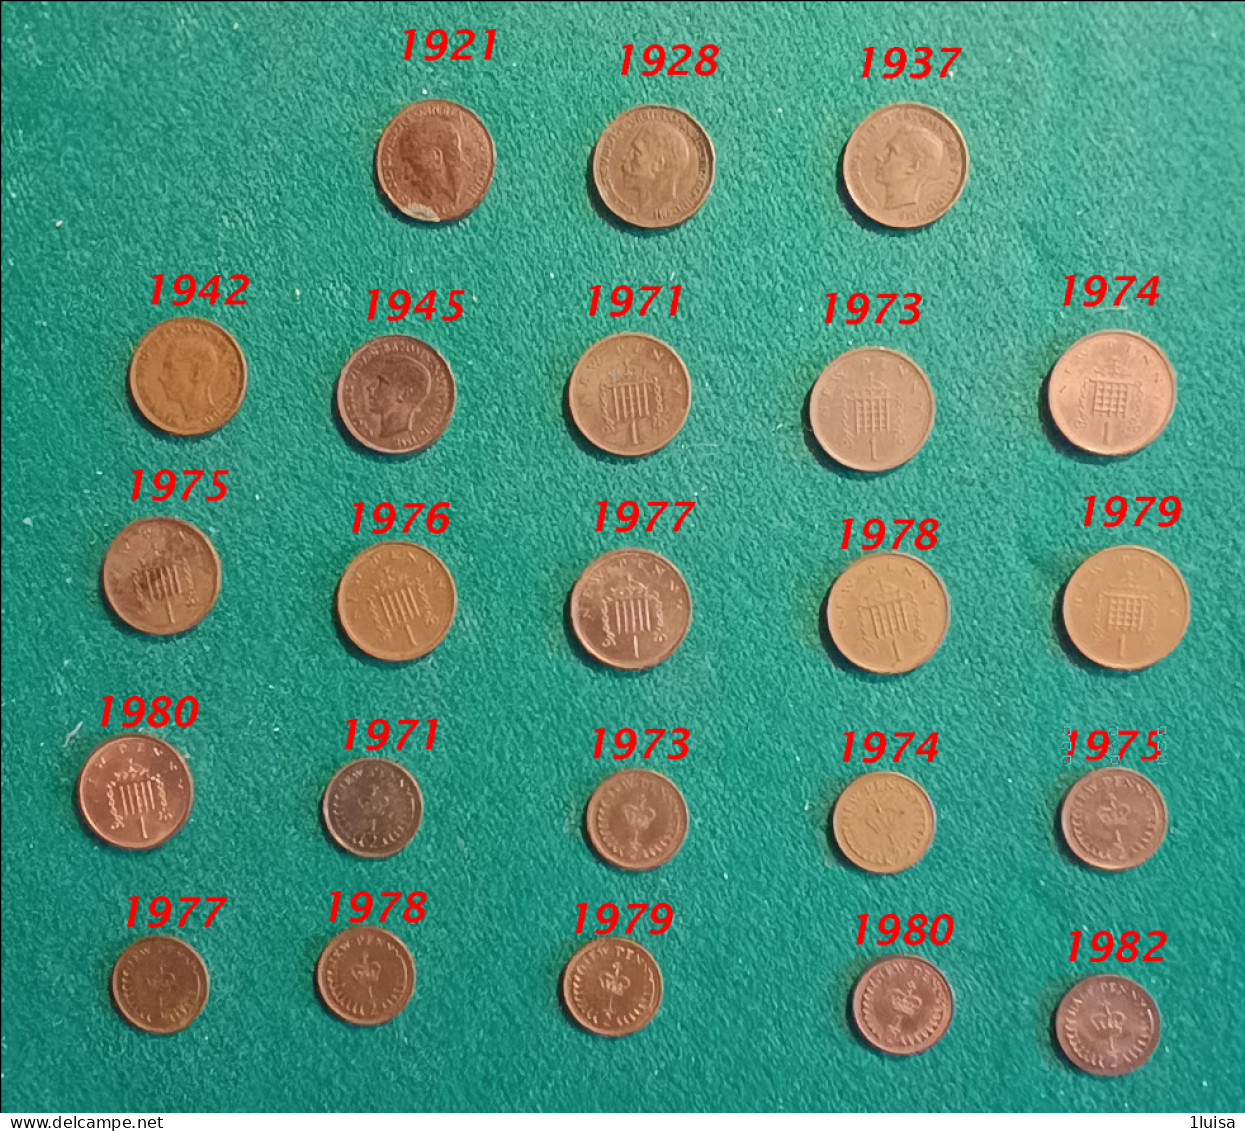 GRAN BRETAGNA 30 Monete Originali Differenti Per Data 1 Penny 1/2 Penny - 1 Penny & 1 New Penny